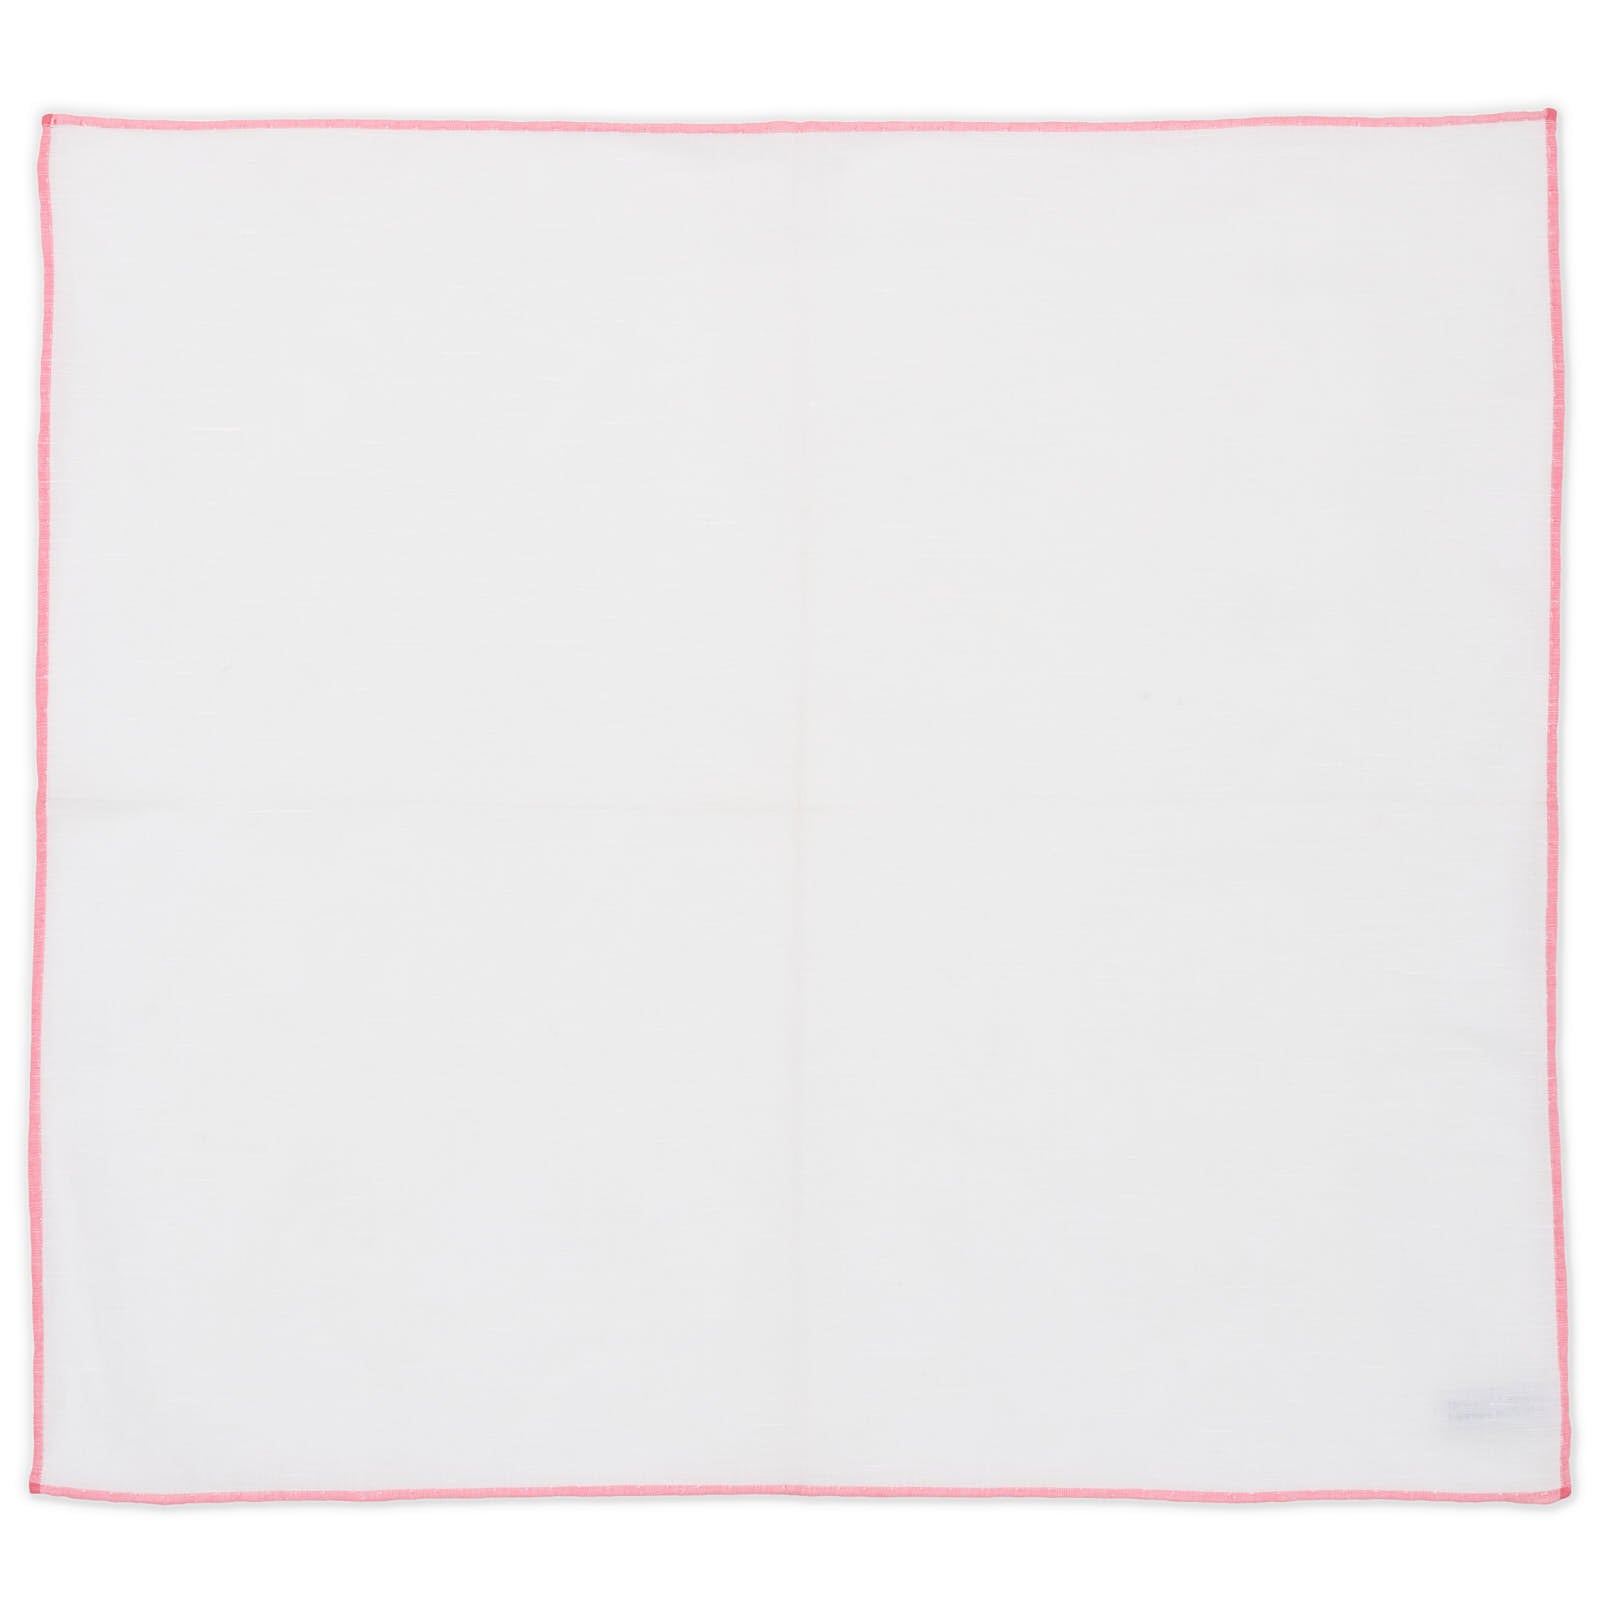 SIMONNOT GODARD Handmade White Solid Cotton-Linen Pocket Square NEW 38cm x 34cm